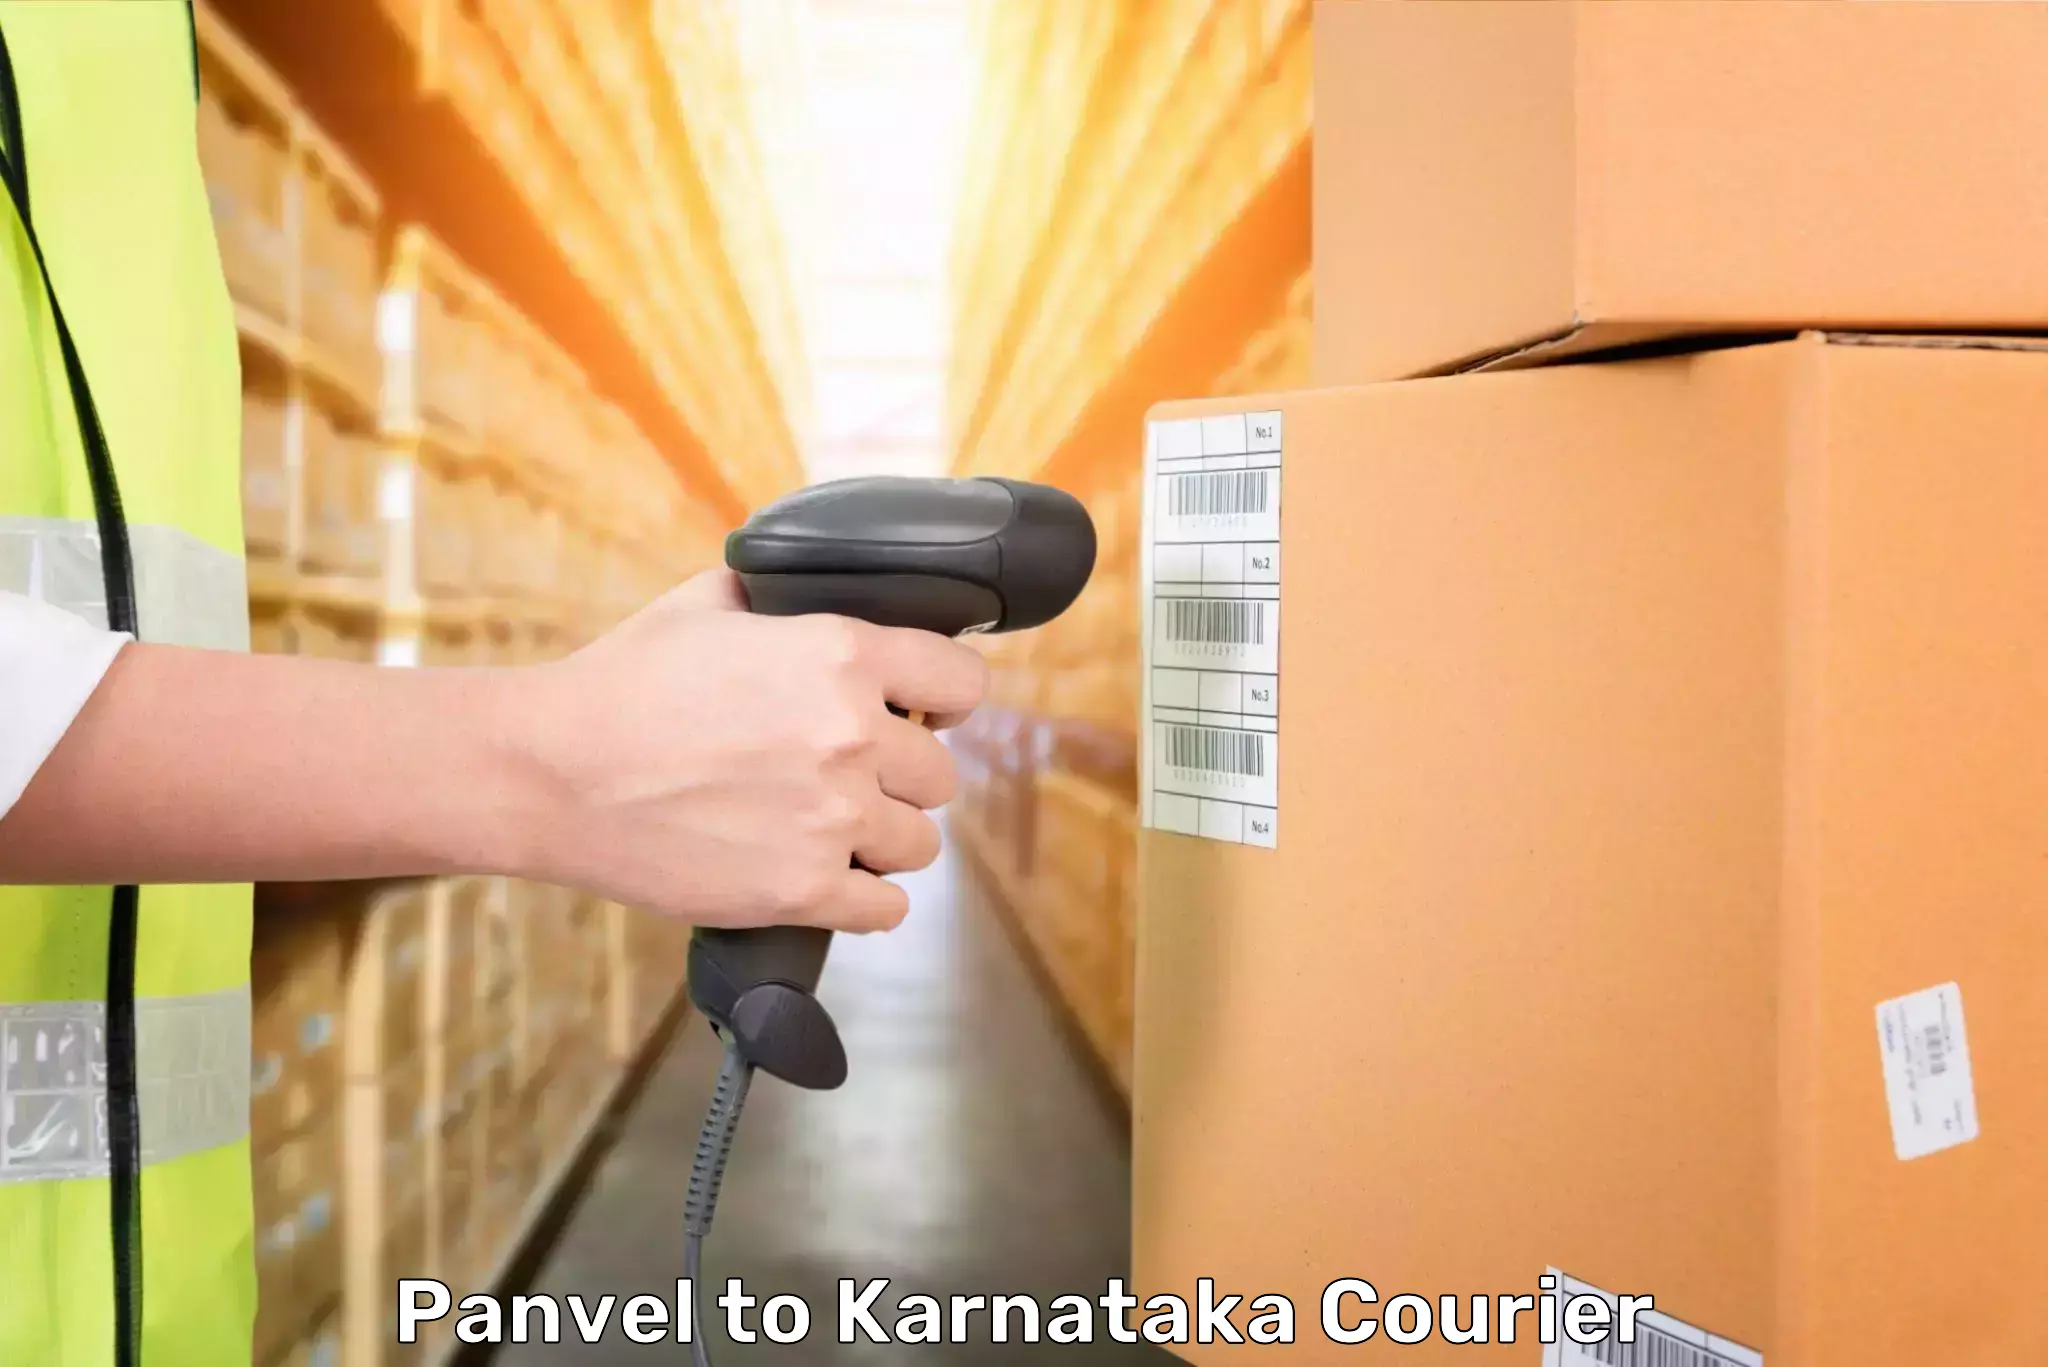 Baggage shipping experts Panvel to Karnataka